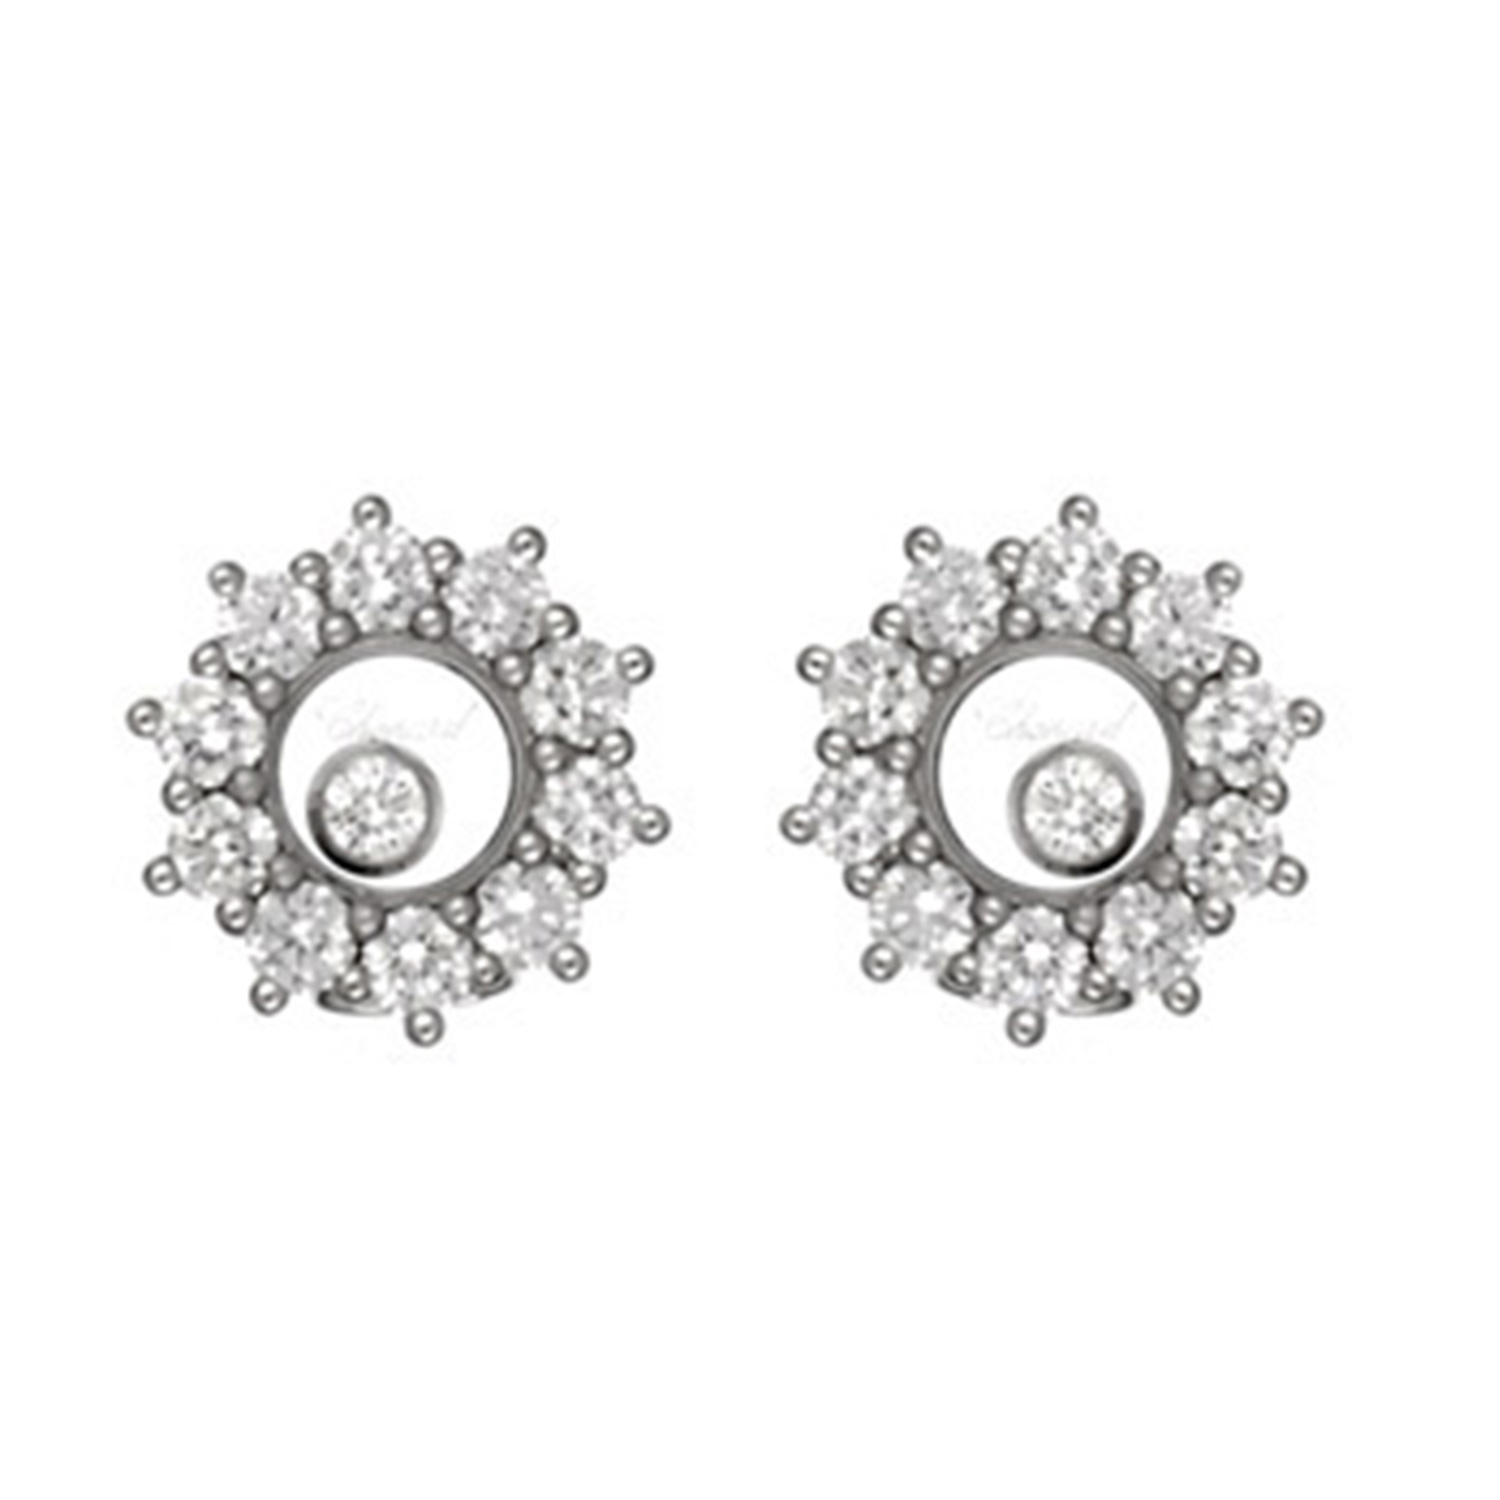 Boucles d'oreilles happy diamonds - Chopard